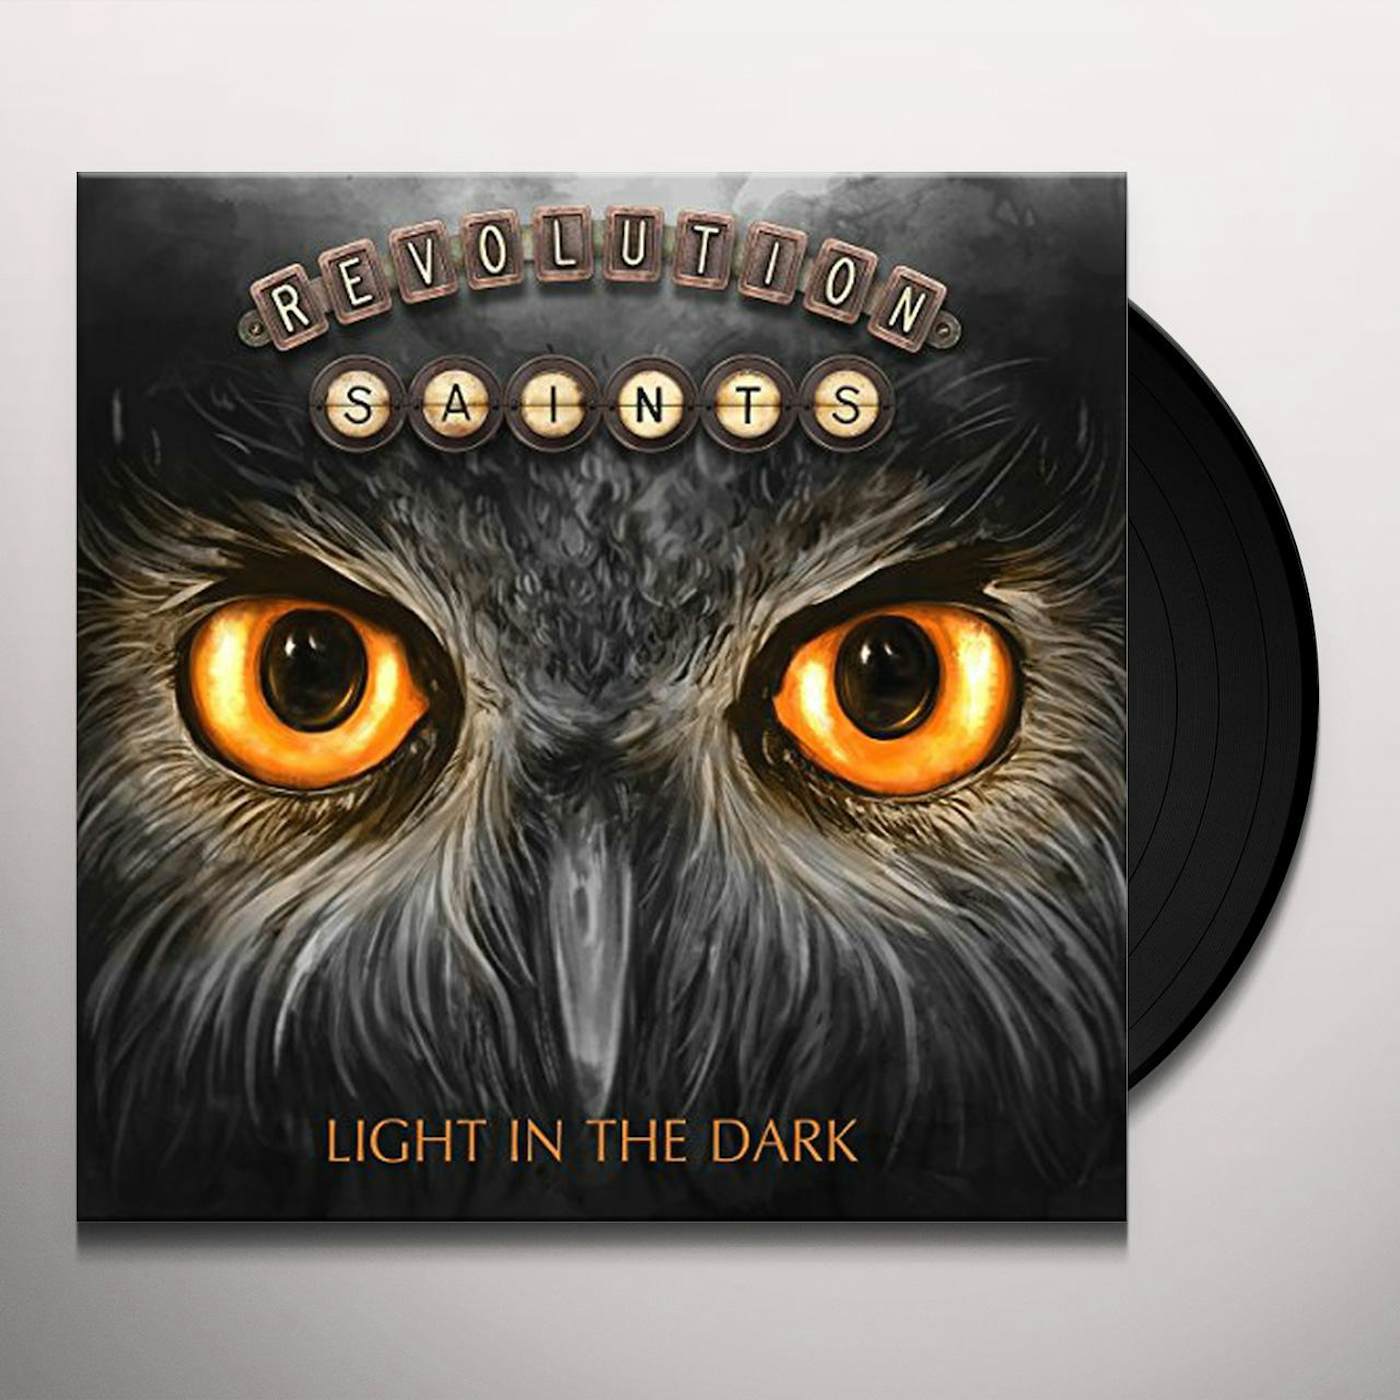 Revolution Saints Light in the Dark Vinyl Record